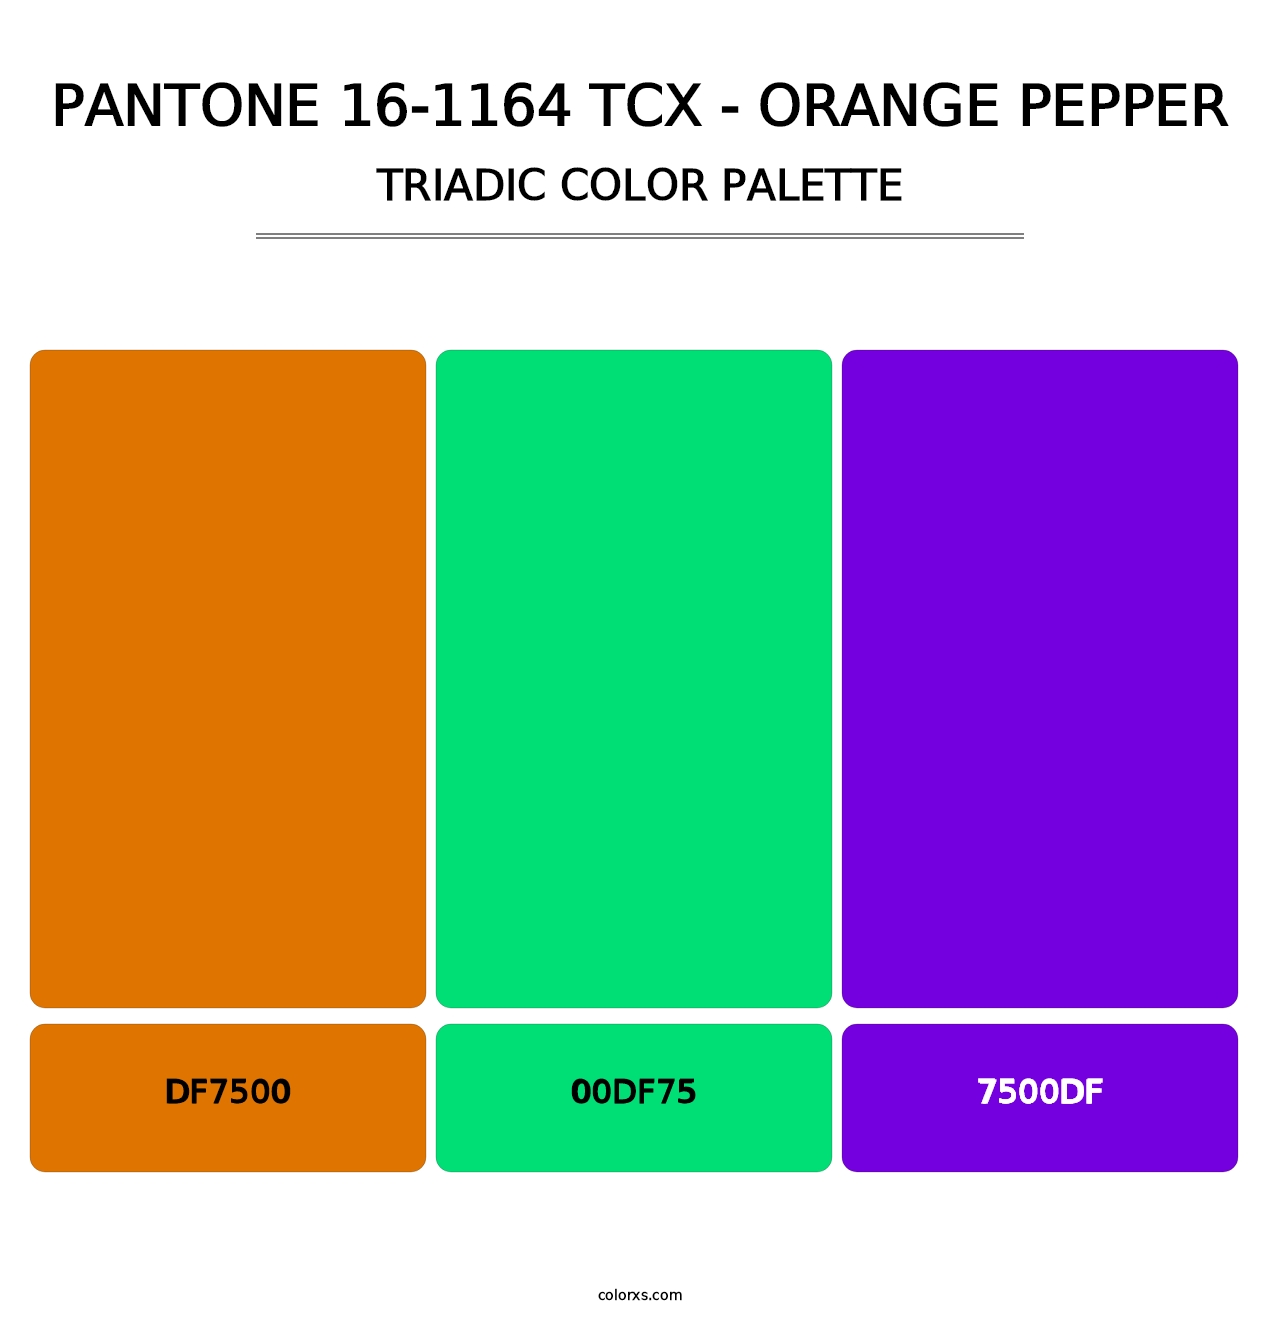 PANTONE 16-1164 TCX - Orange Pepper - Triadic Color Palette